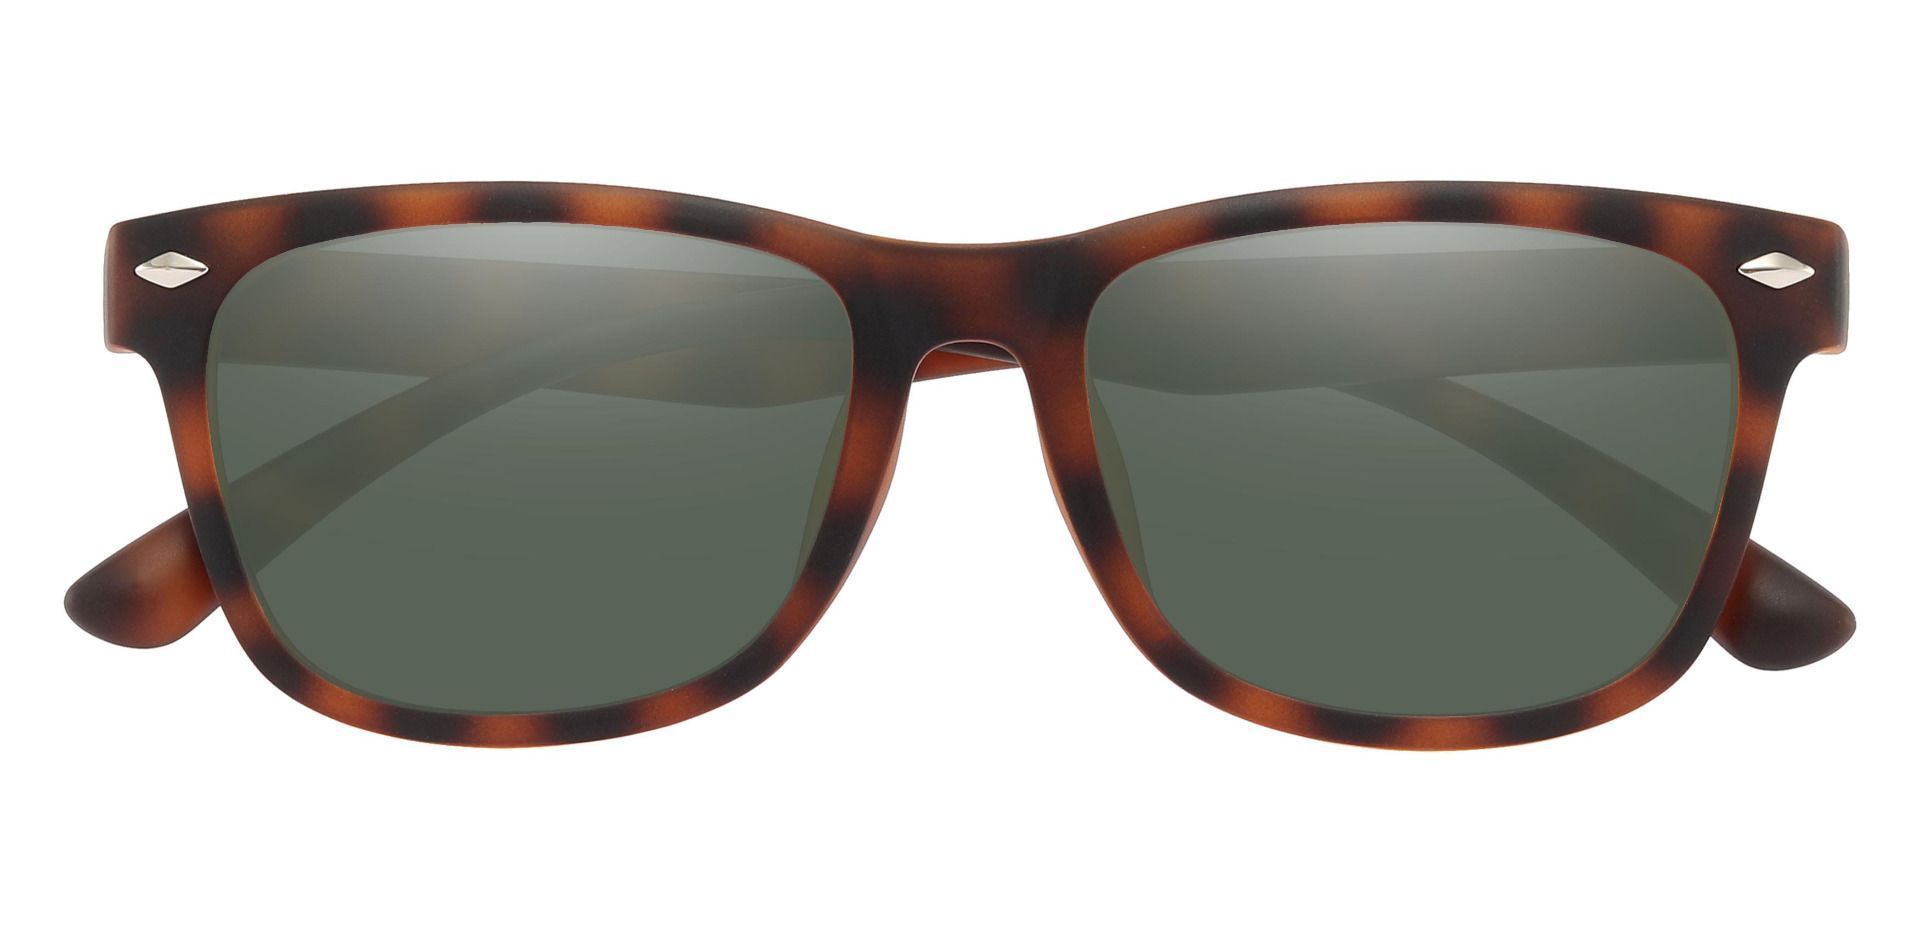 Shaler Square Reading Sunglasses - Tortoise Frame With Green Lenses